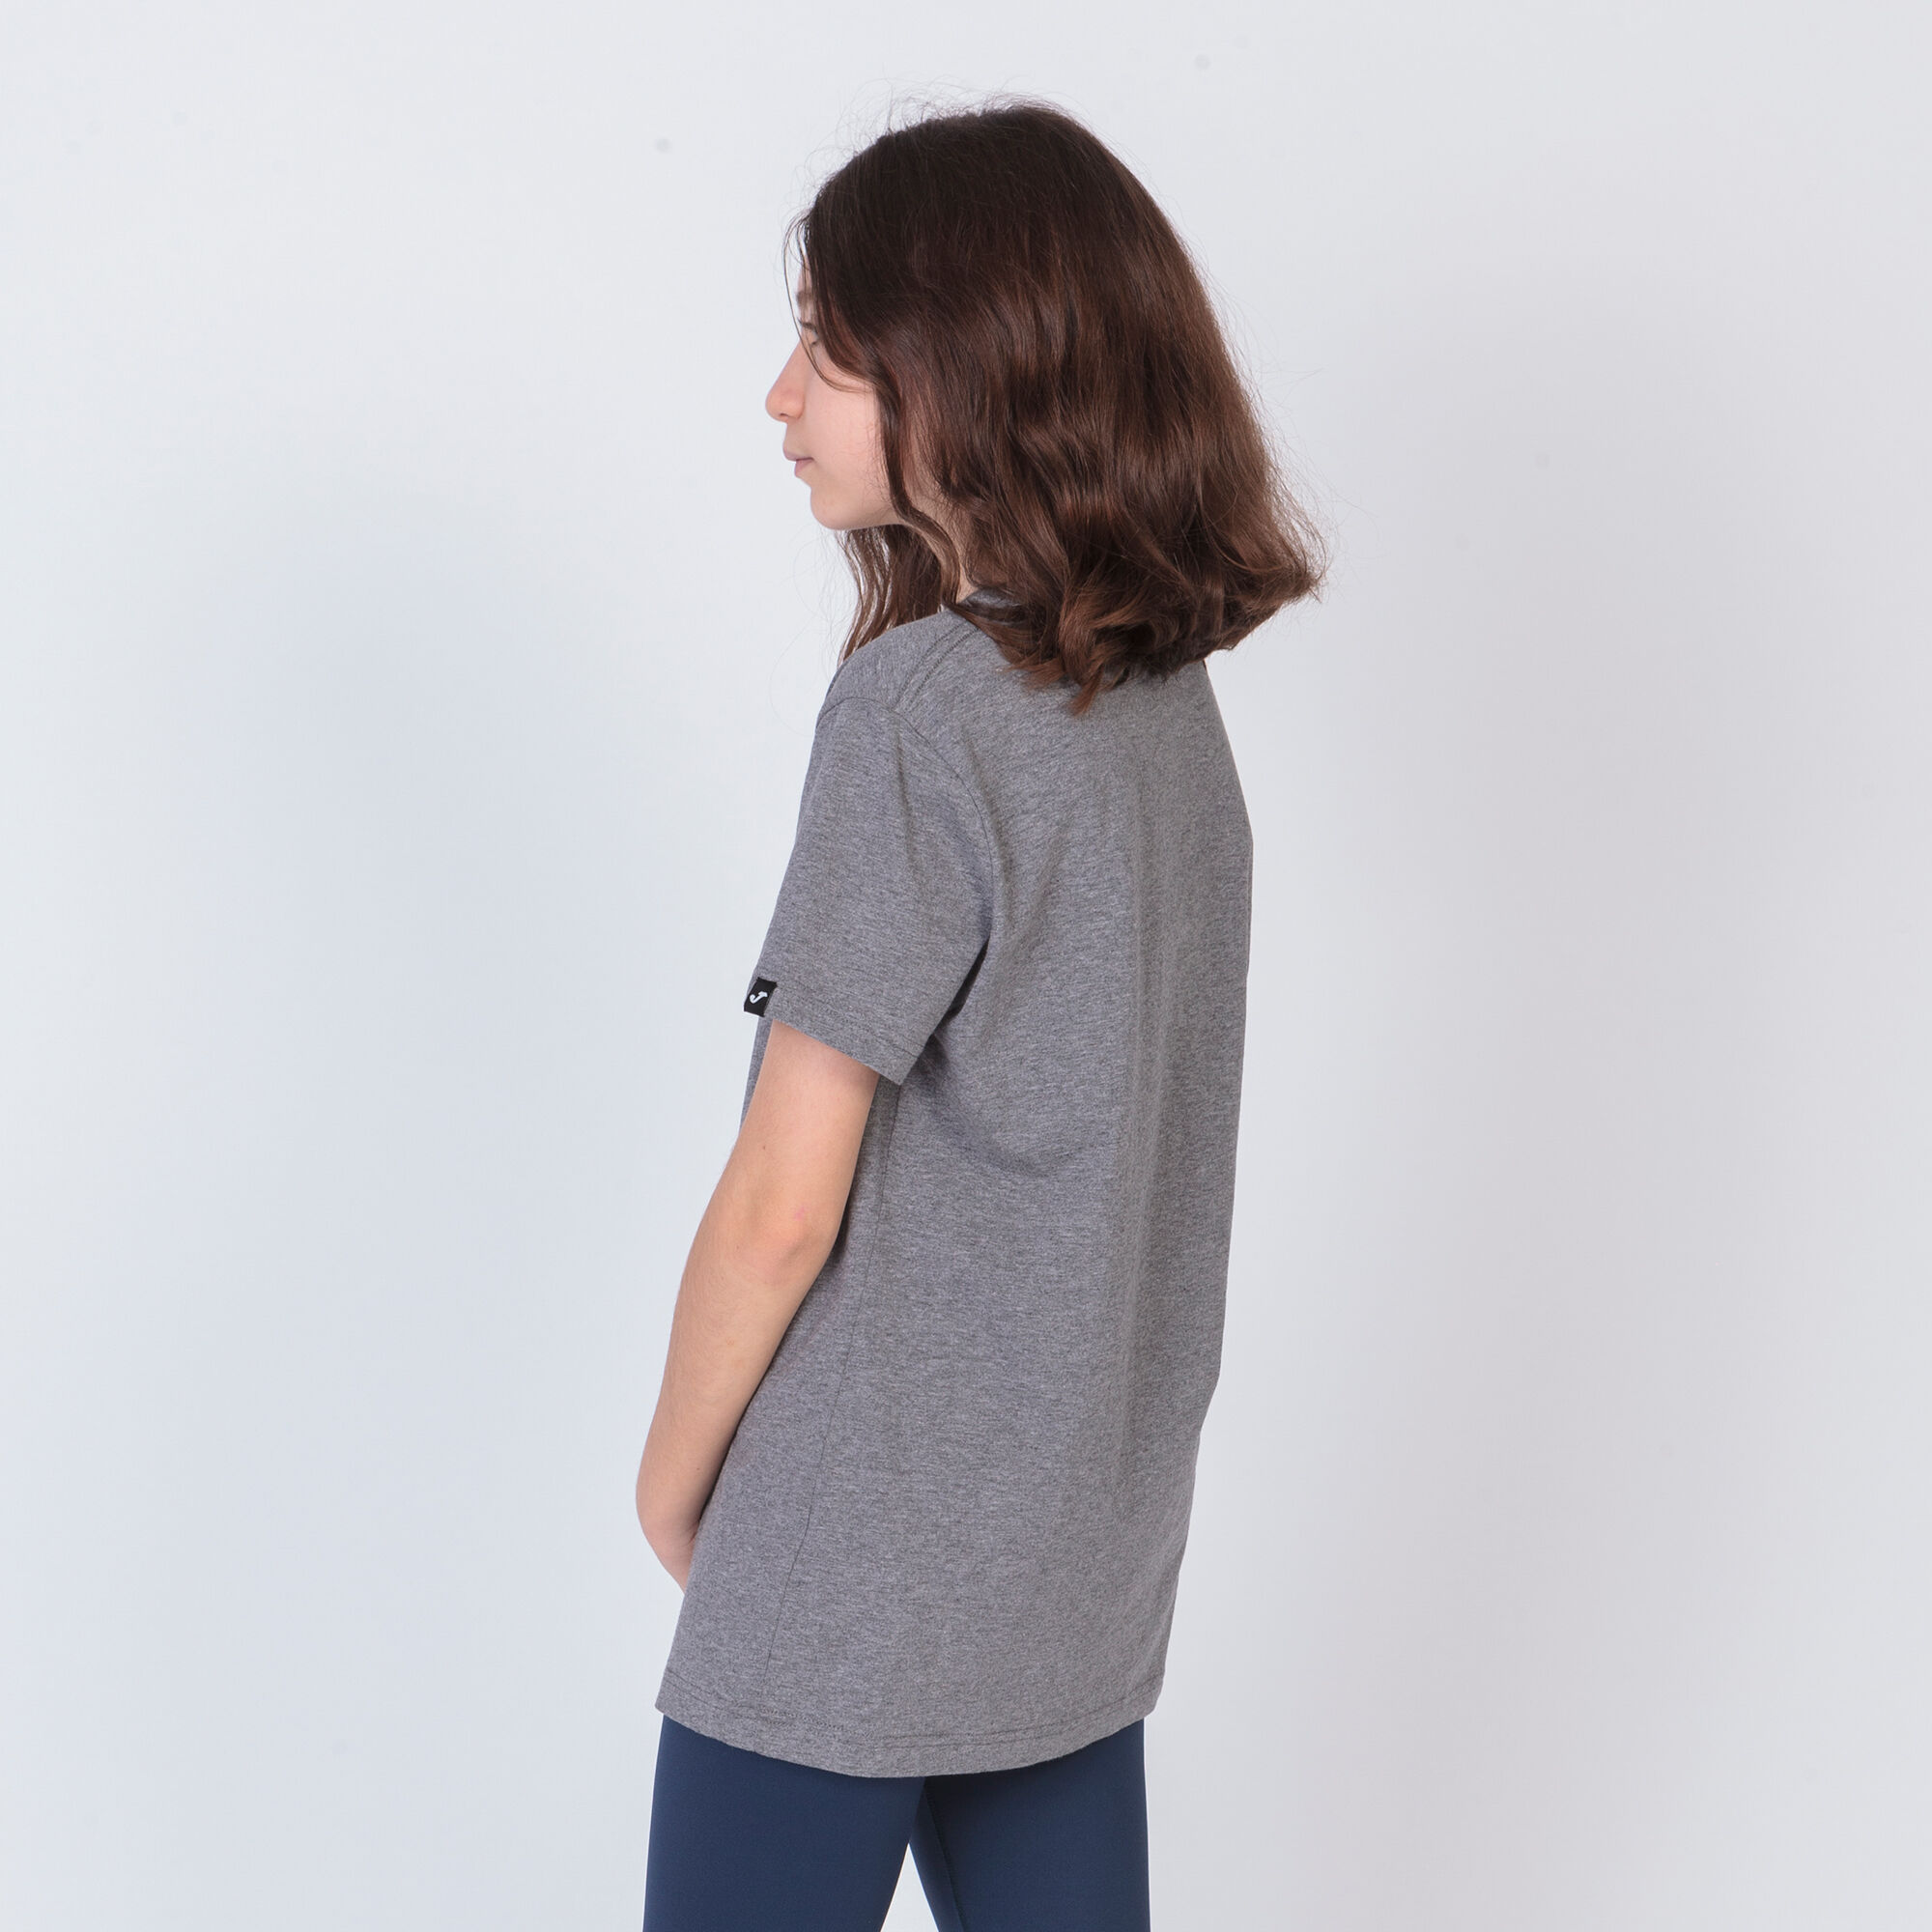 Shirt short sleeve woman Desert melange gray